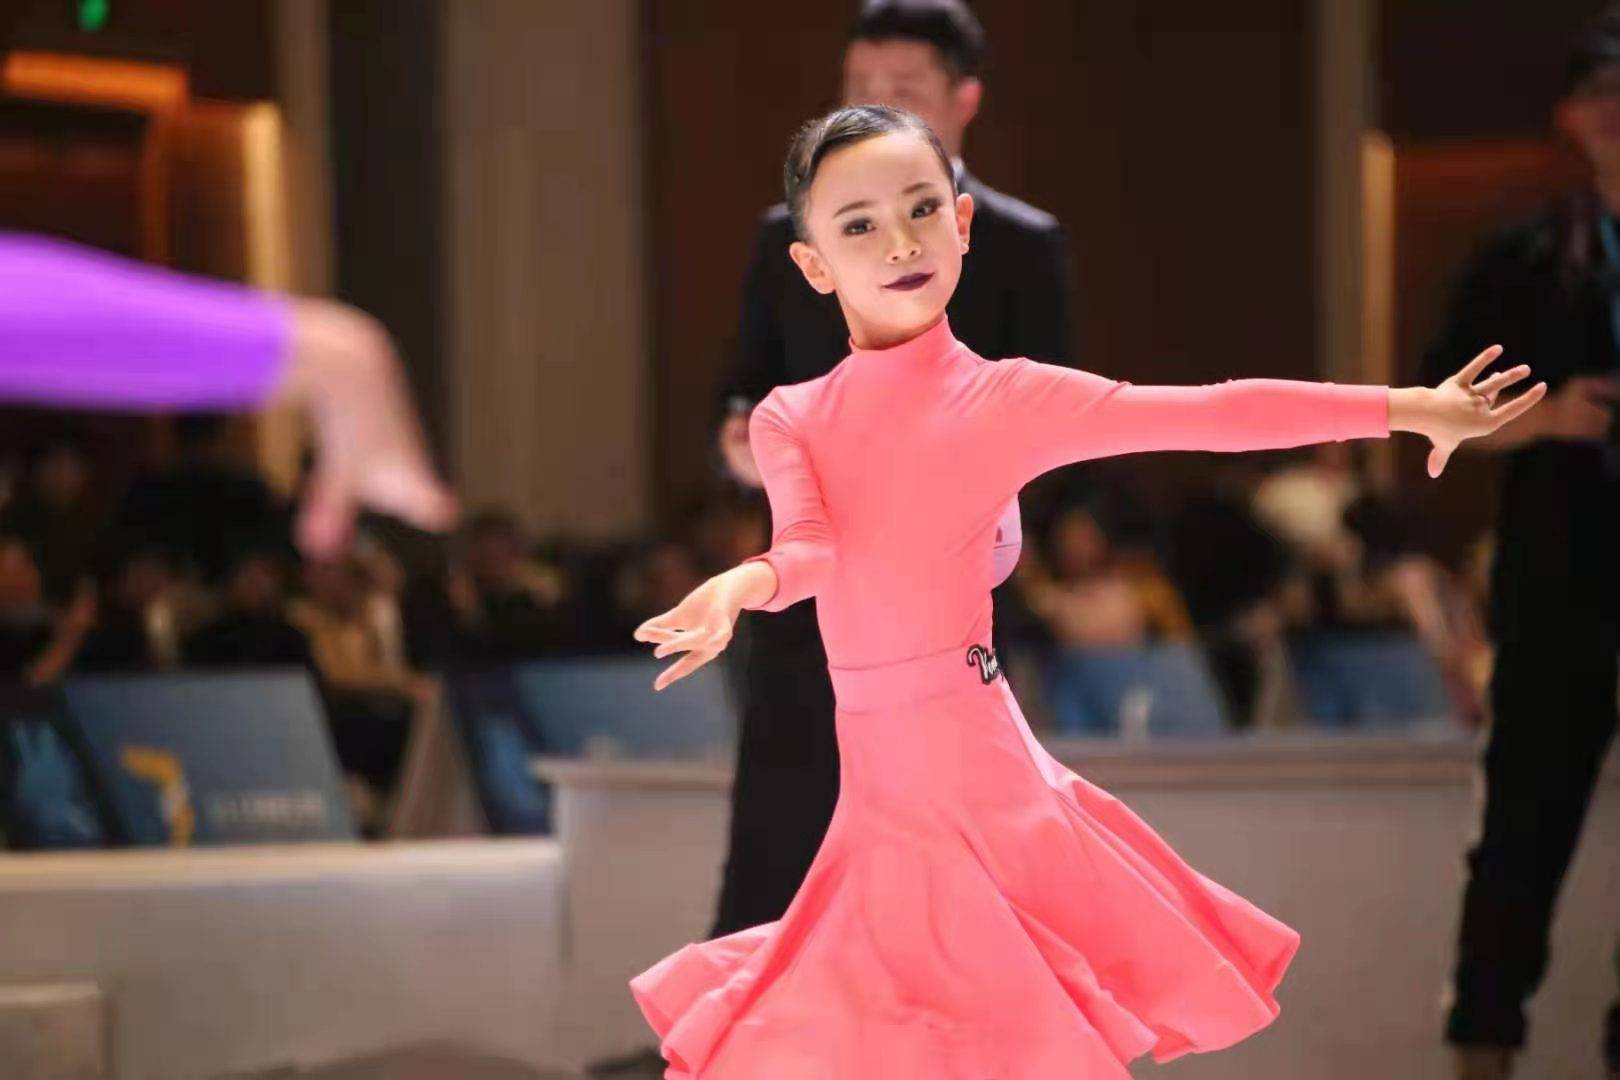 黑池舞蹈节南京锦标赛图片